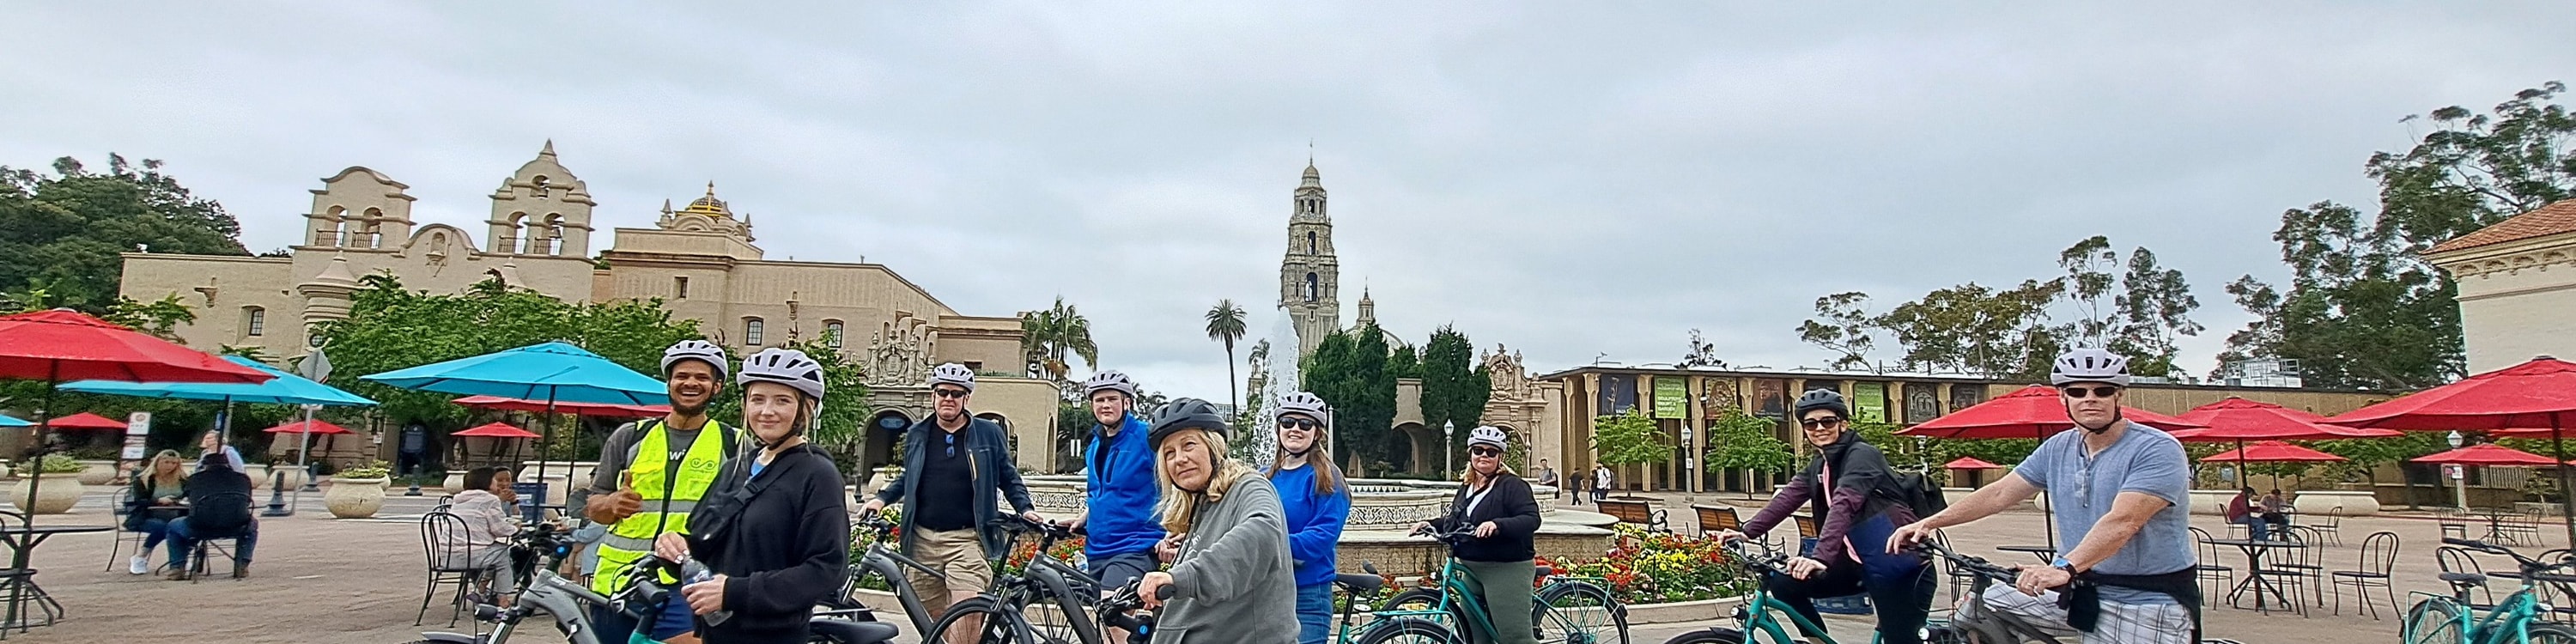 聖地牙哥城市精華電動自行車導覽之旅